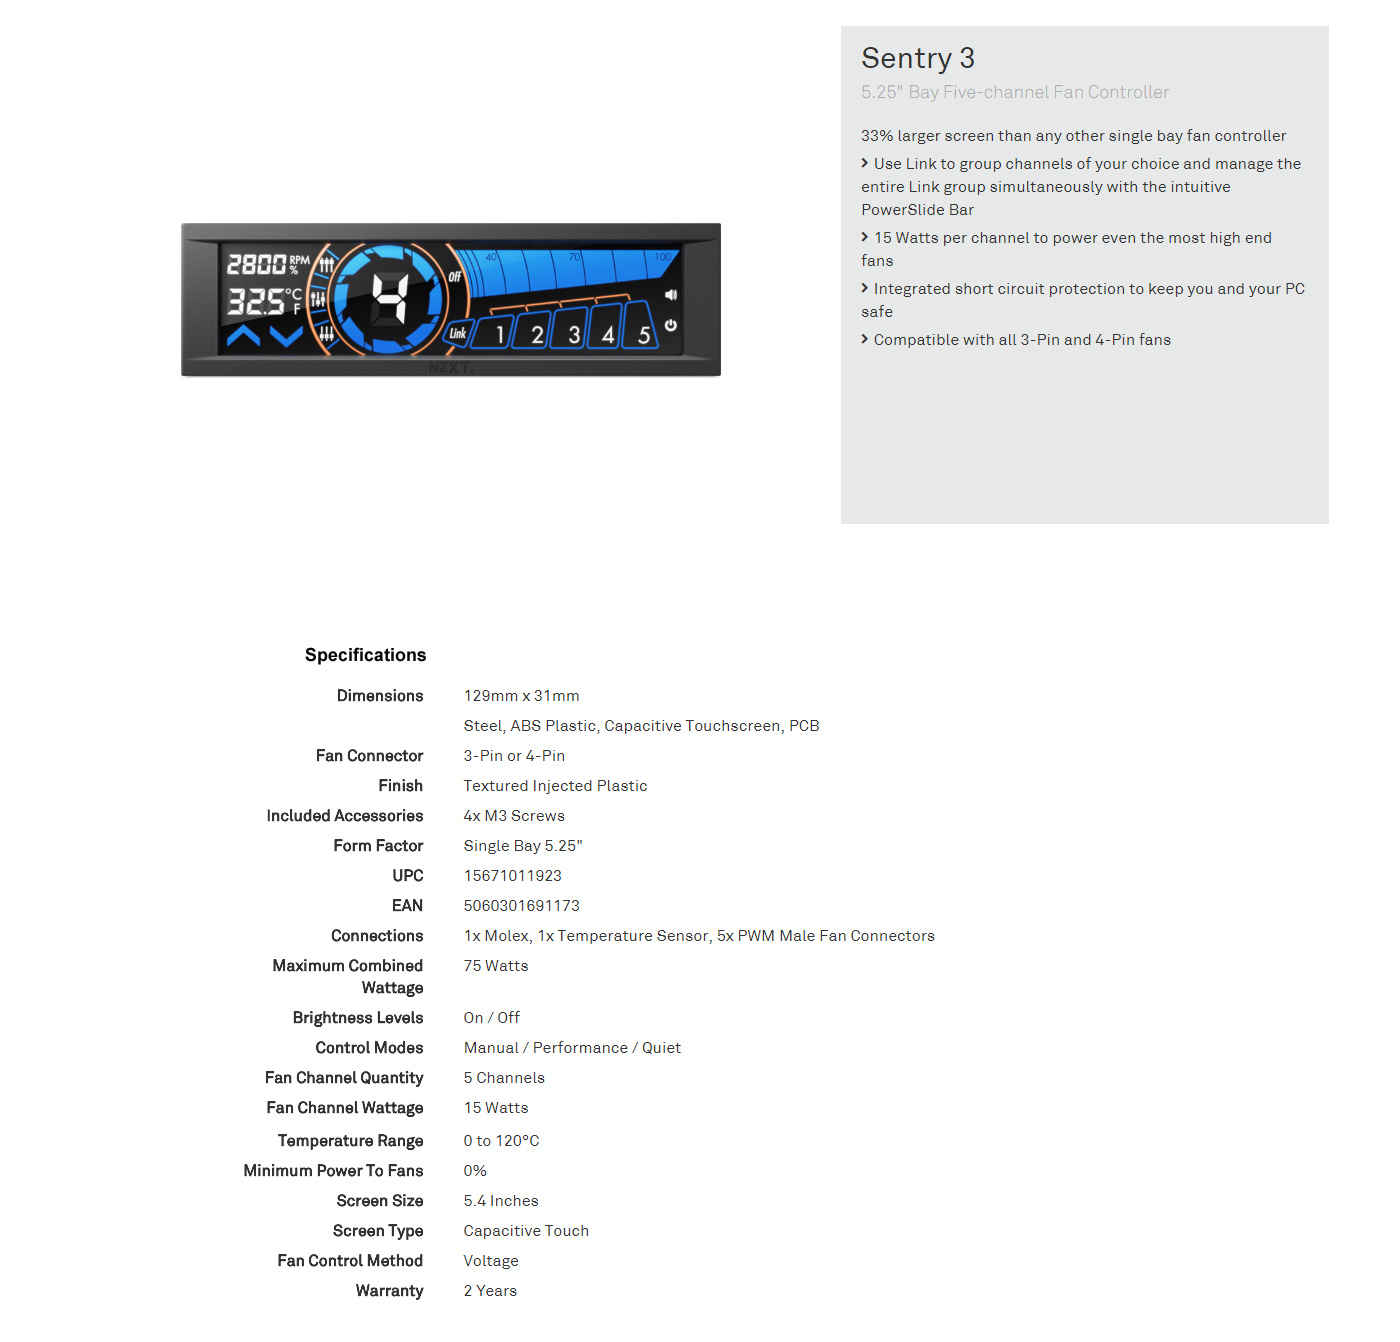 Buy Online Nzxt Sentry 3 5.25inch Bay Five-Channel Fan Controller